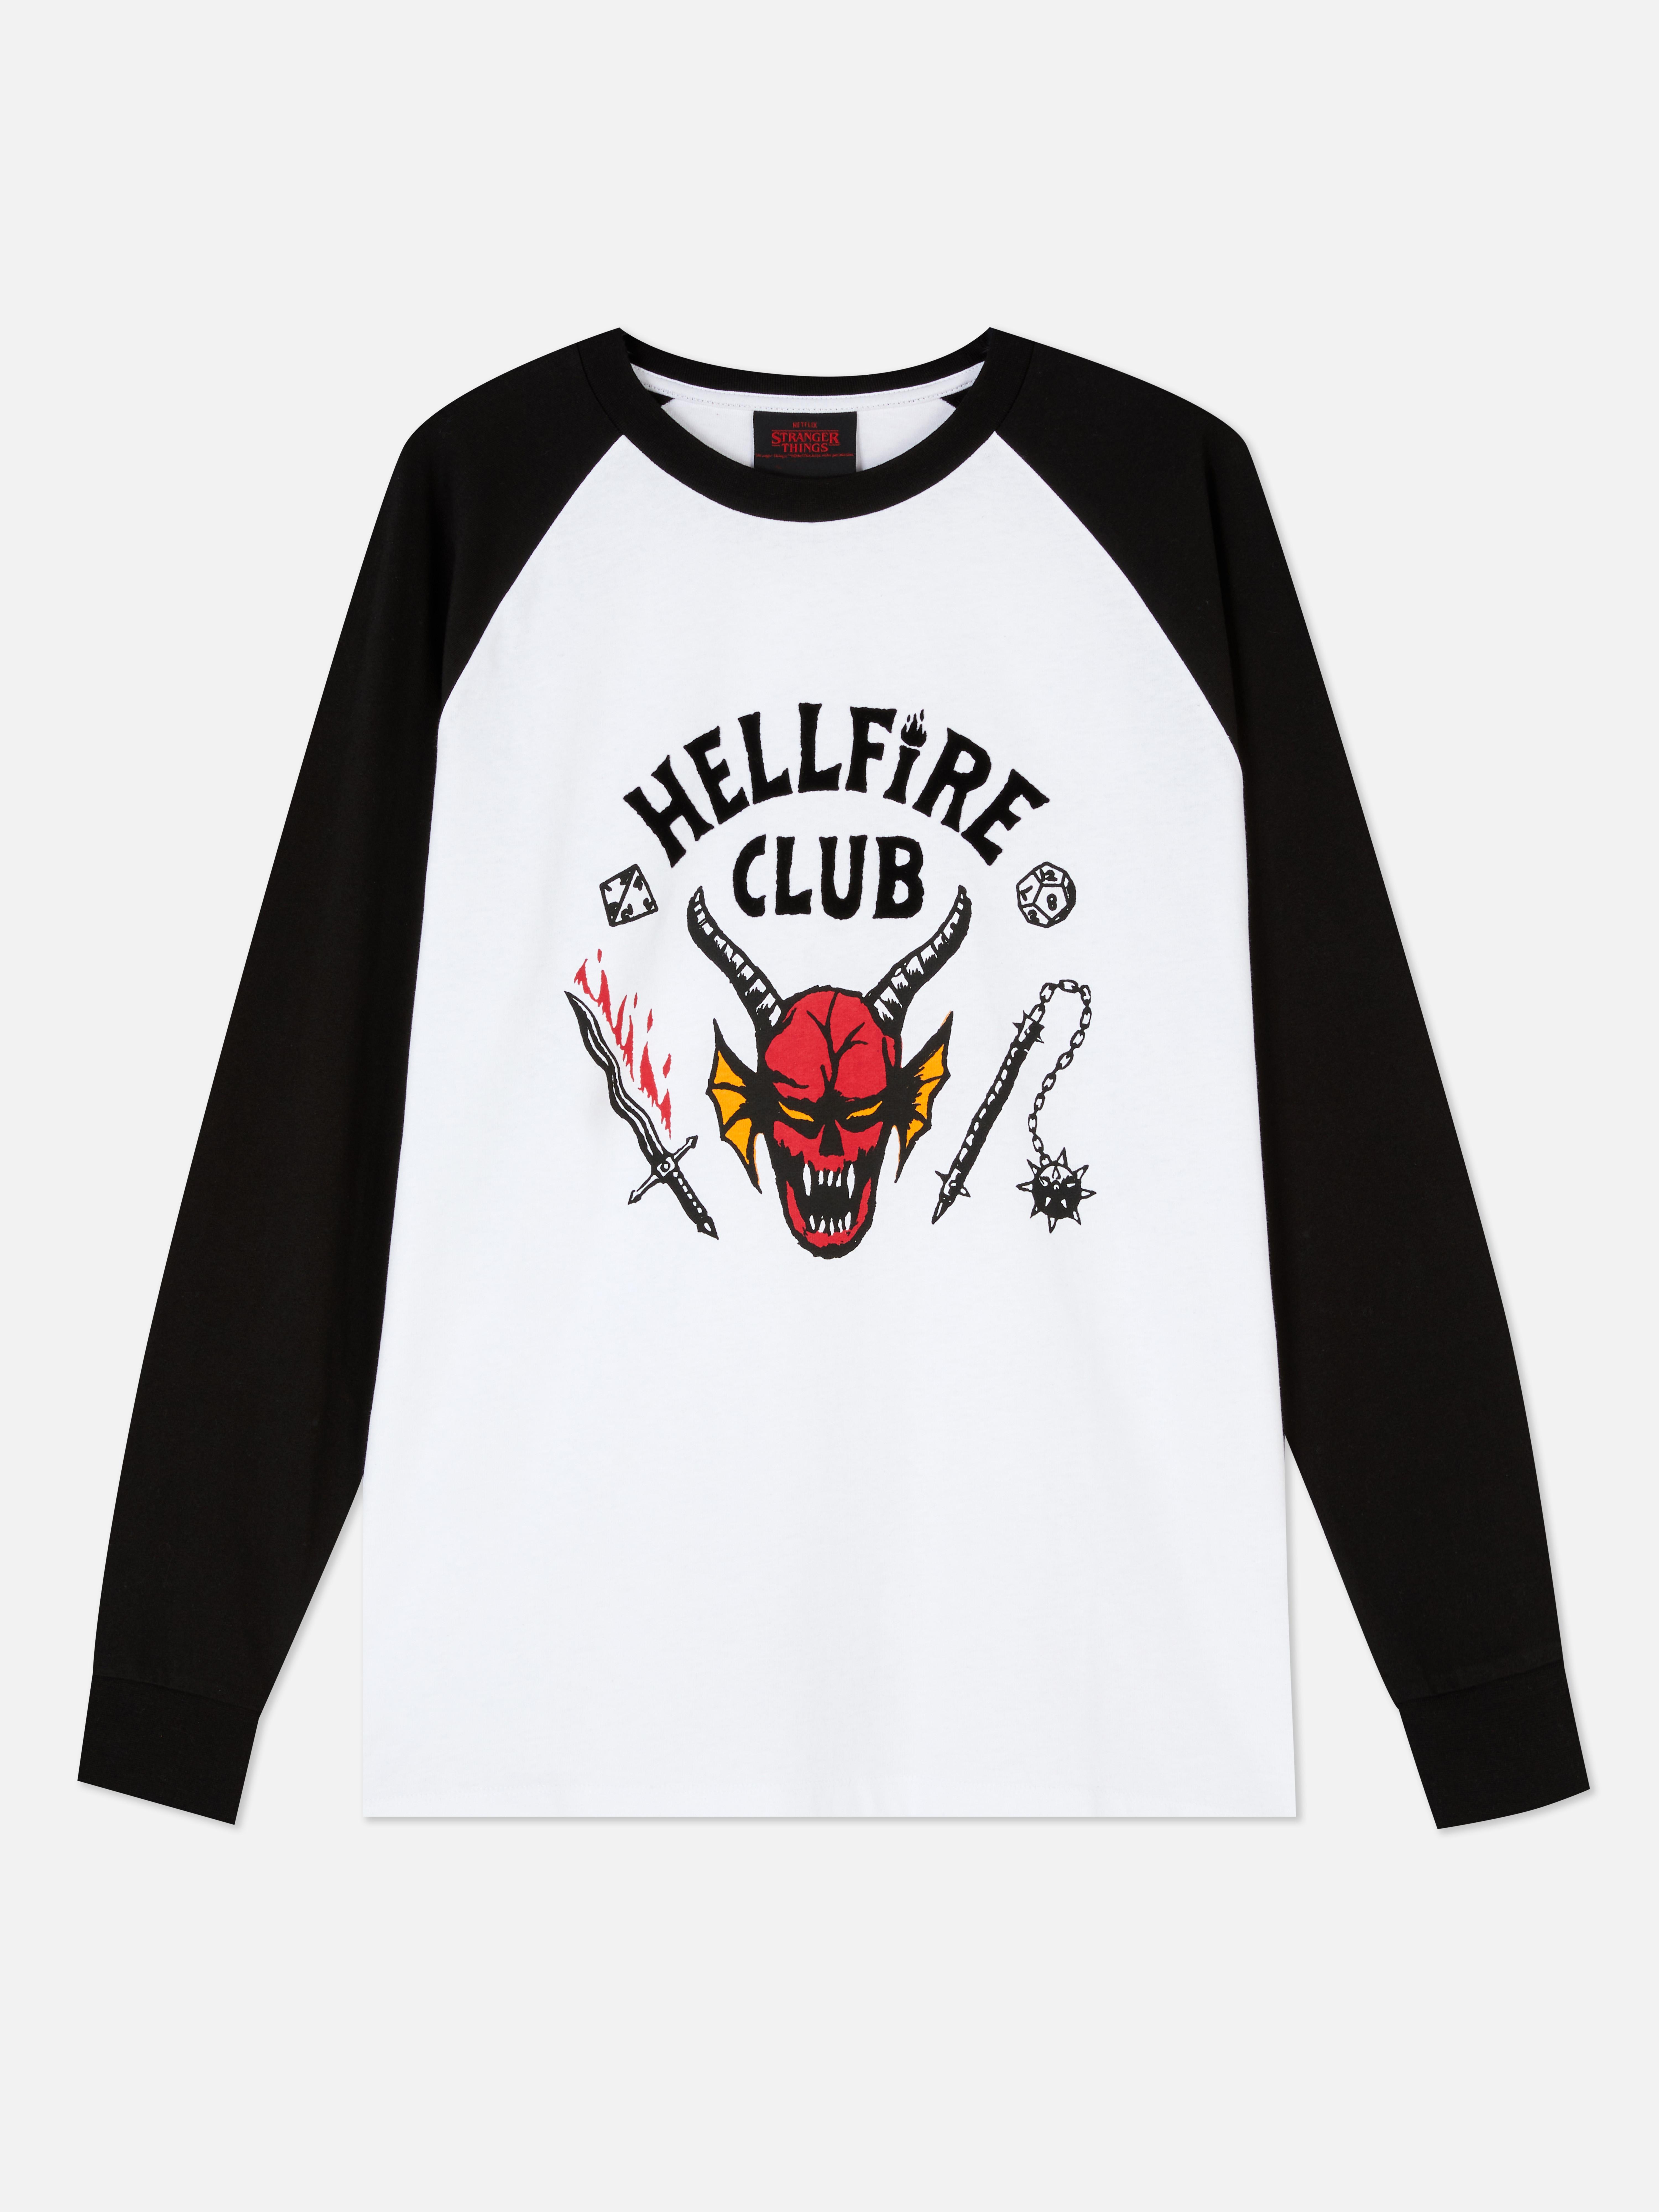 Camiseta de Hellfire Club de Stranger Things | para hombre | Camisetas y de arriba para hombre | Ropa para hombre | línea de moda masculina | Todos los productos Primark Primark España